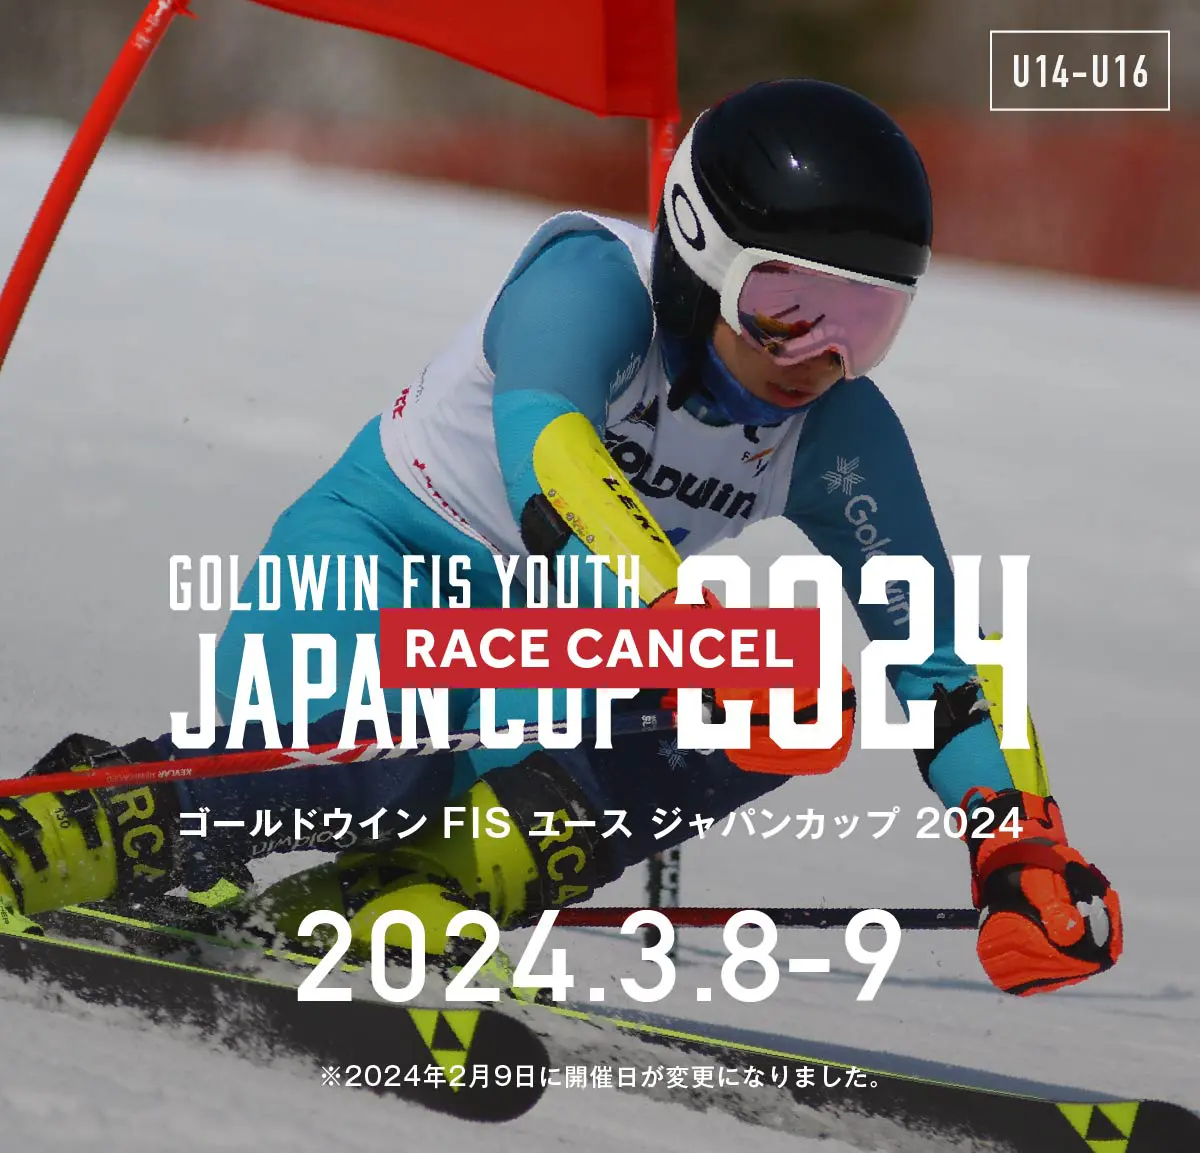 FIS 公認スキー大会 ジャパンカップ